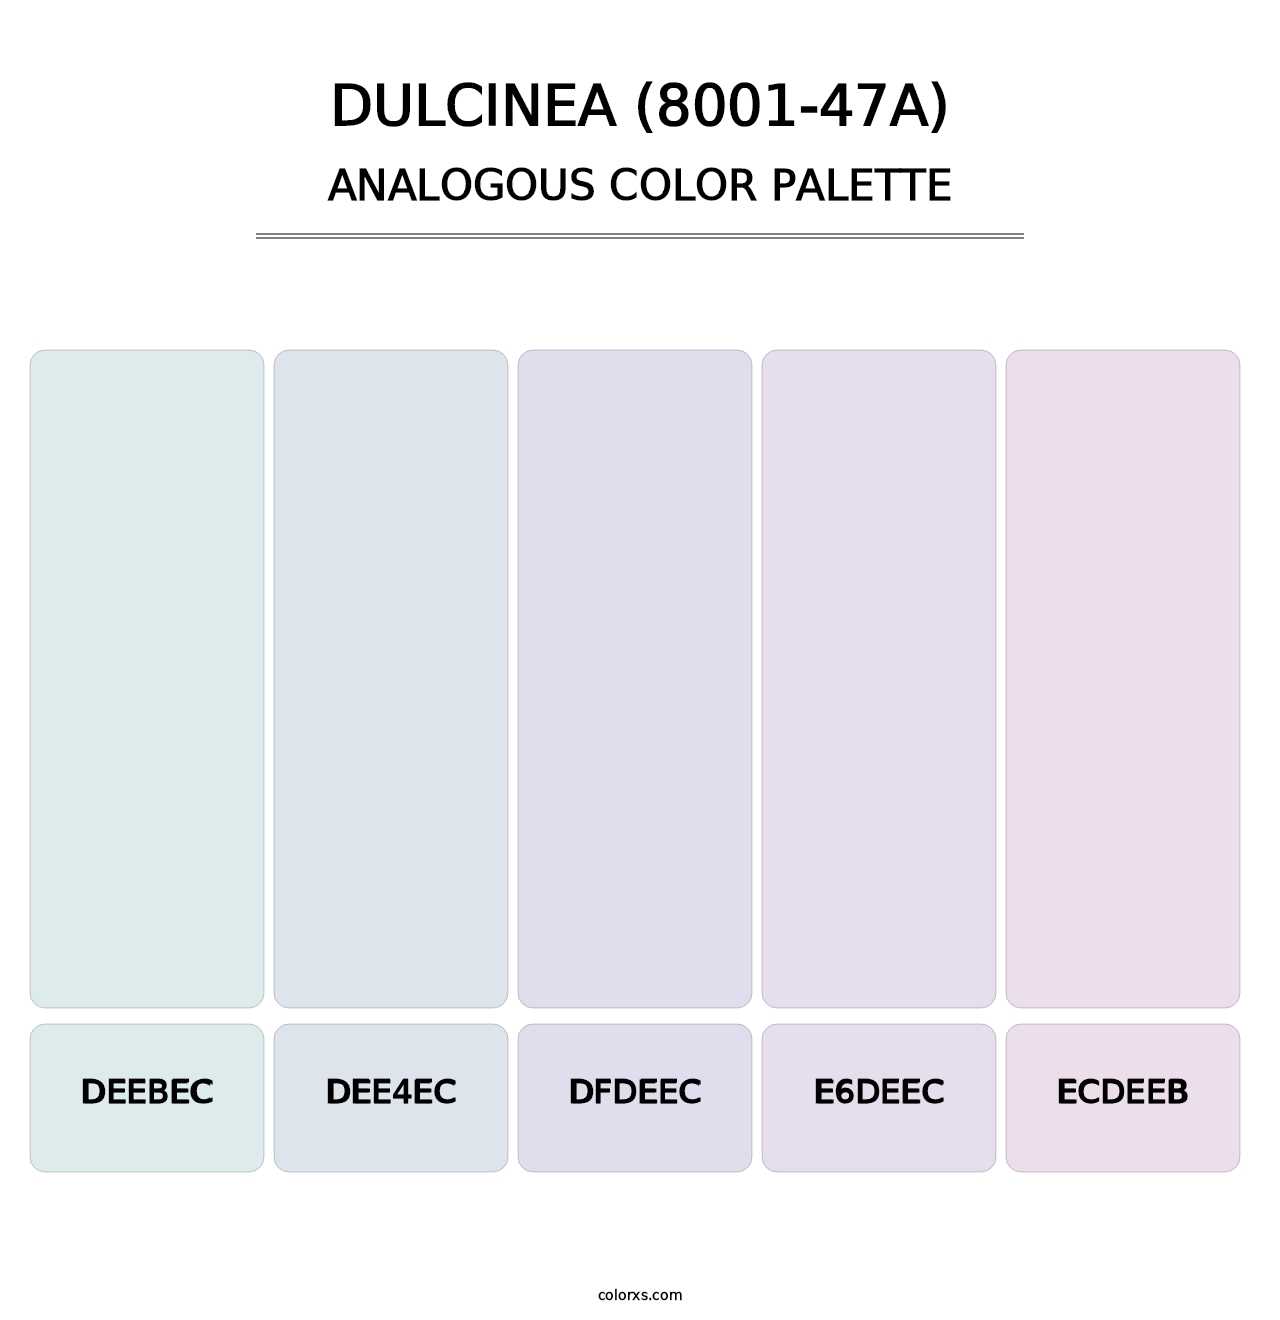 Dulcinea (8001-47A) - Analogous Color Palette